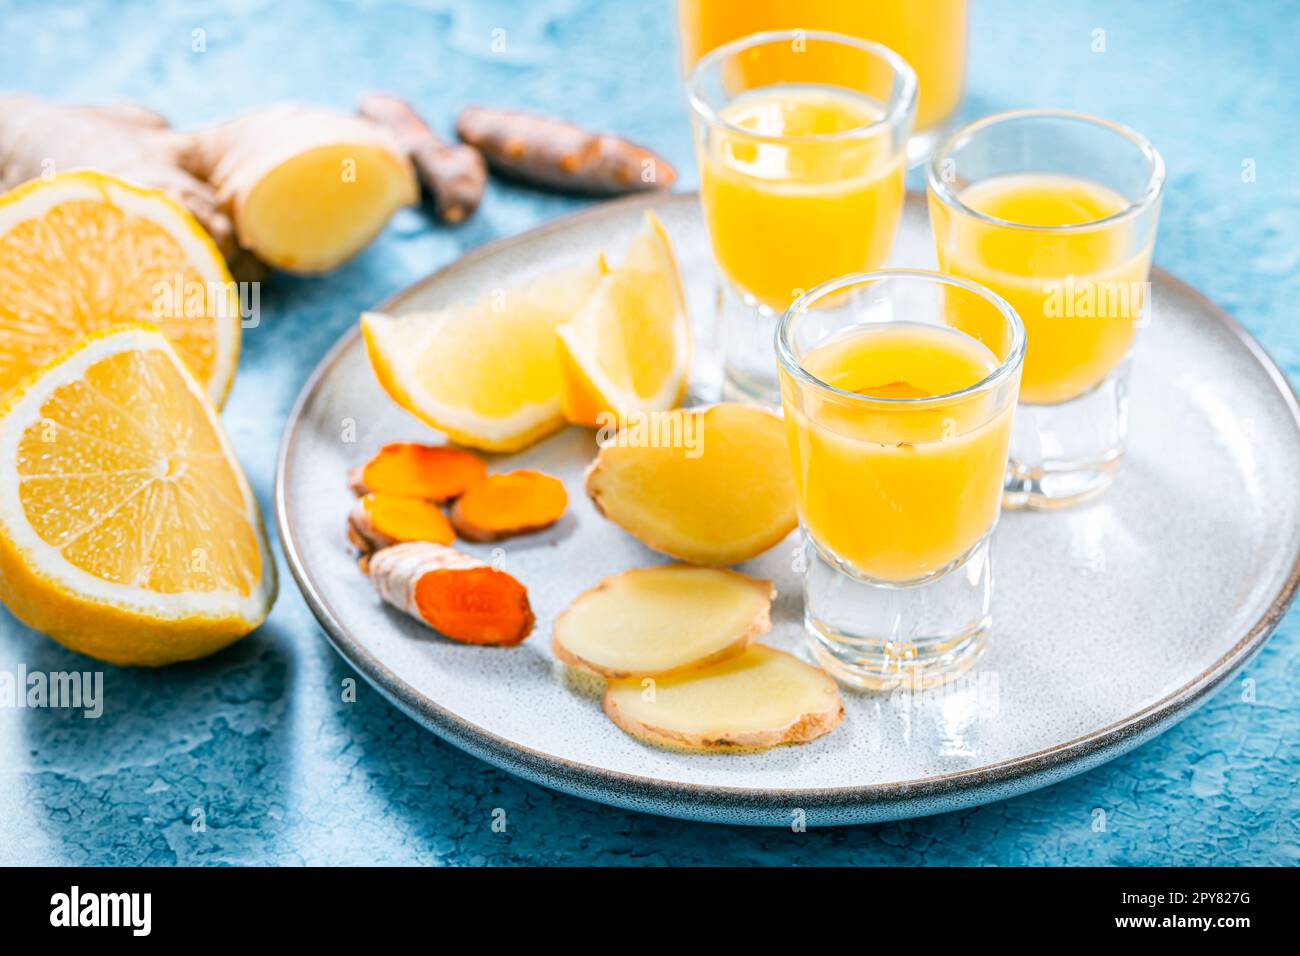 Boosting immune system - homemade healthy Ginger Lemon Turmeric Shot Stock Photo